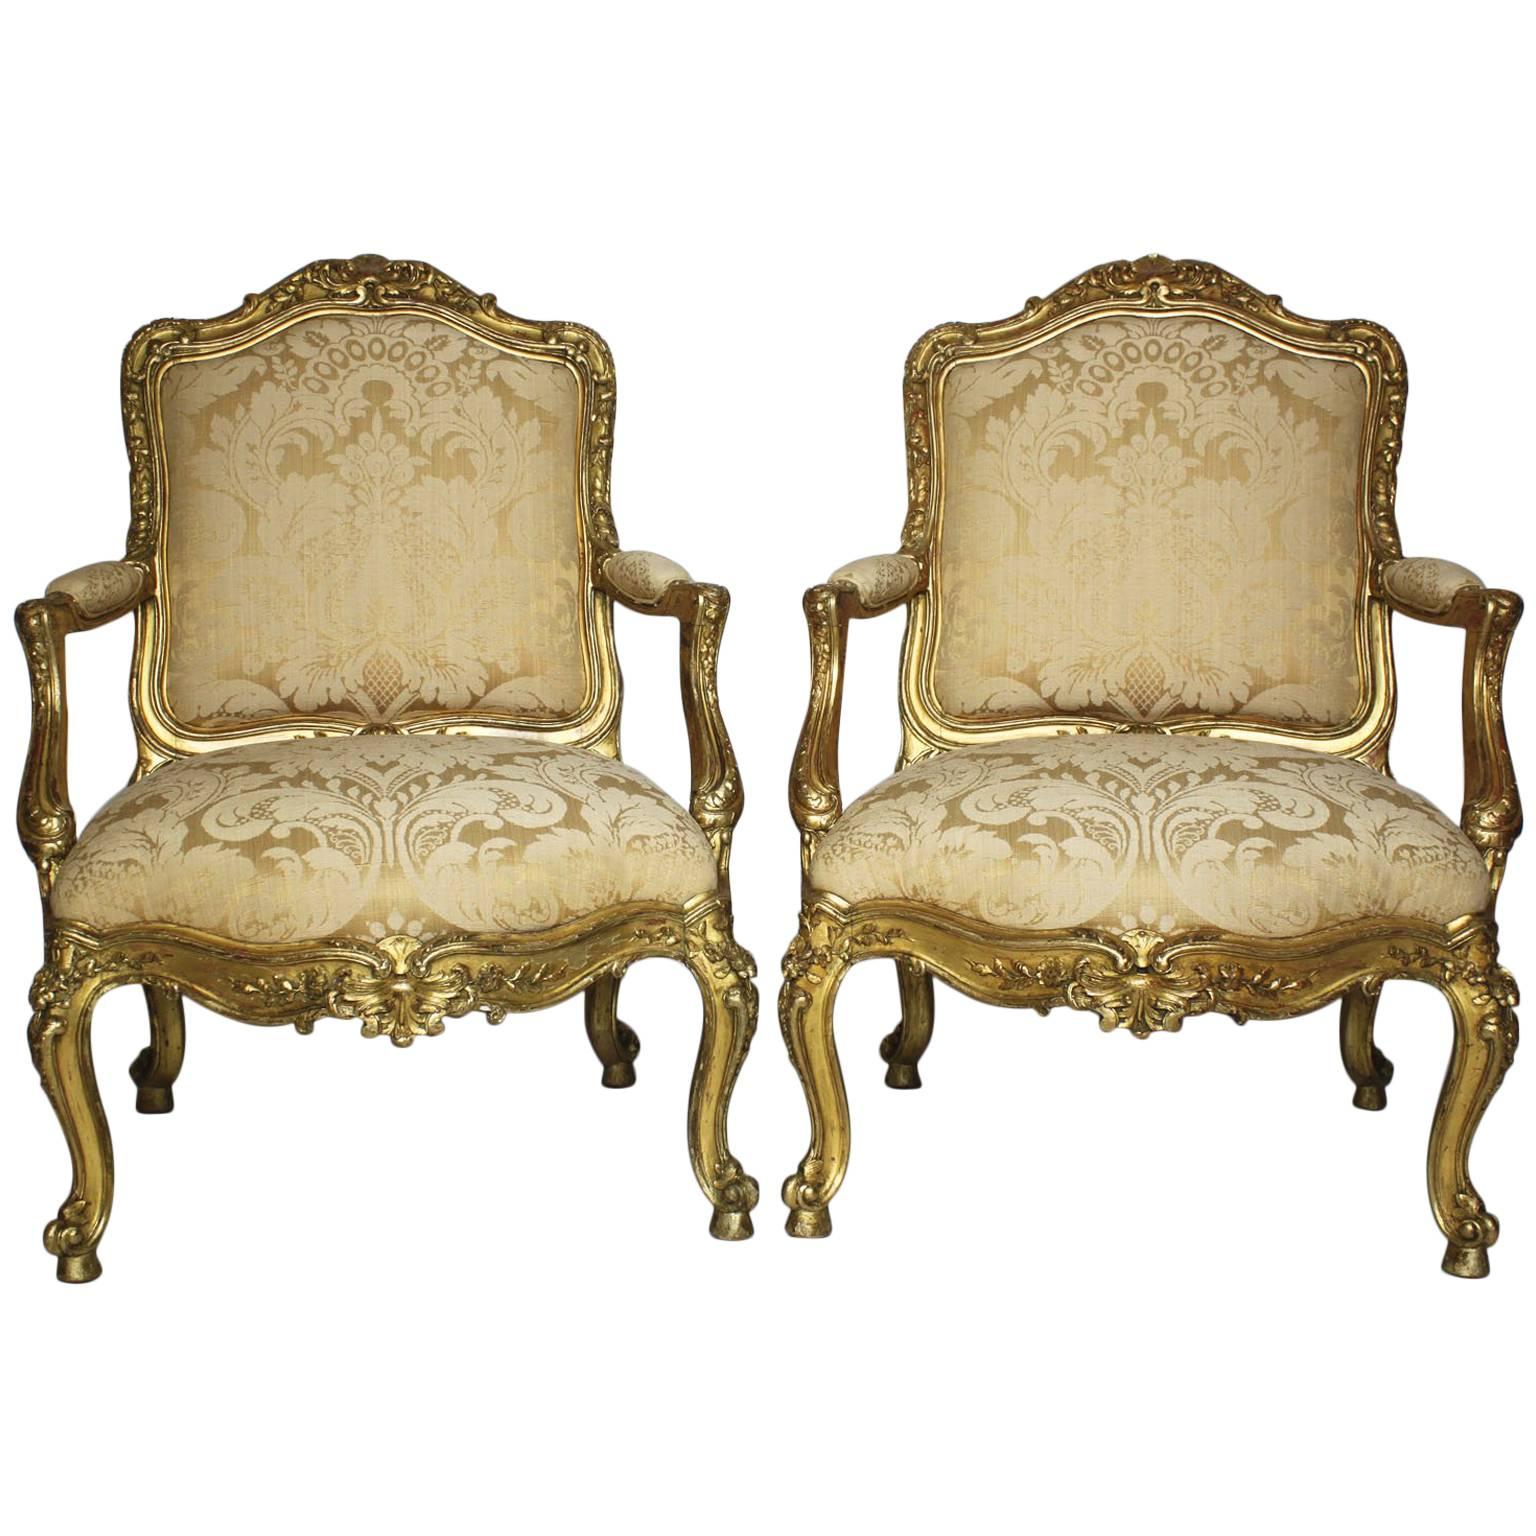 Zwei italienische geschnitzte Sessel im Rokoko-Stil des 19. Jahrhunderts aus vergoldetem Holz, um 1860